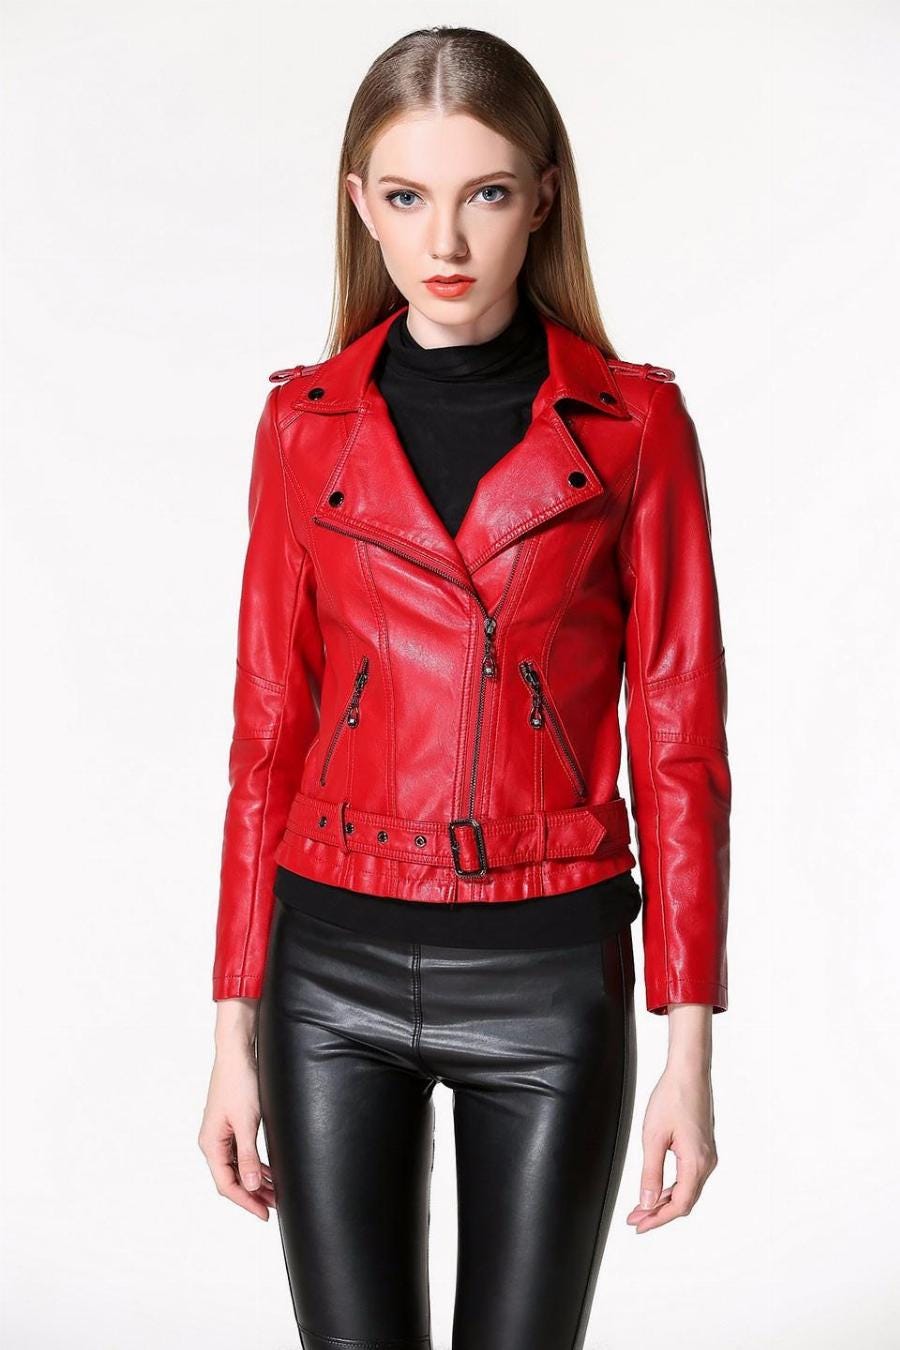 Women Leather Clothing – Medium